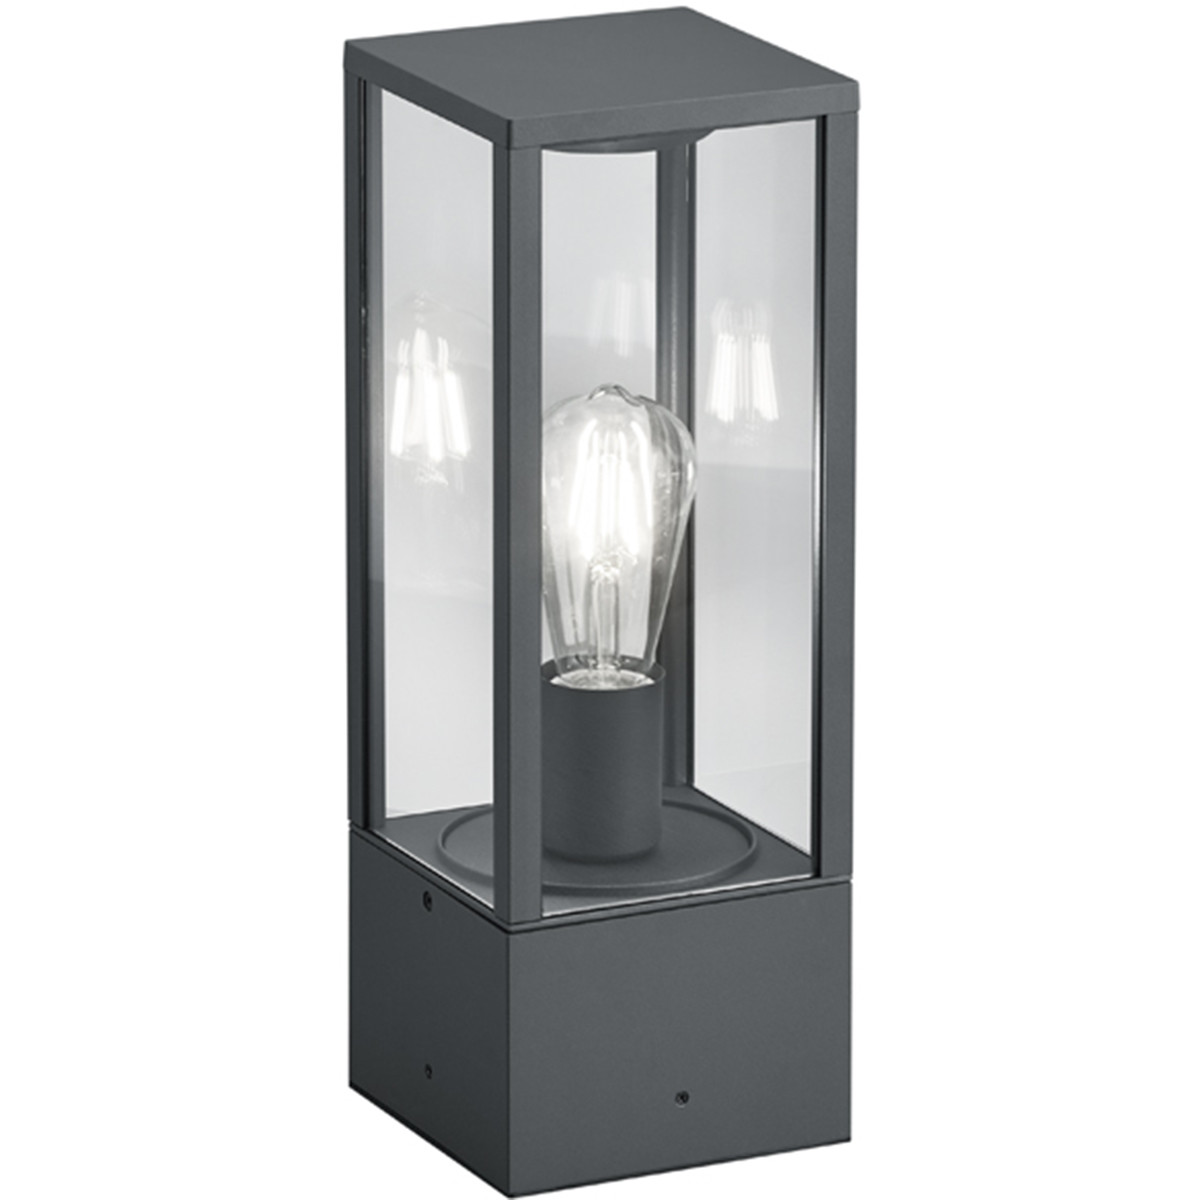 LED Tuinverlichting - Staande Buitenlamp - Trion Garinola - E27 Fitting - Mat Antraciet - Aluminium